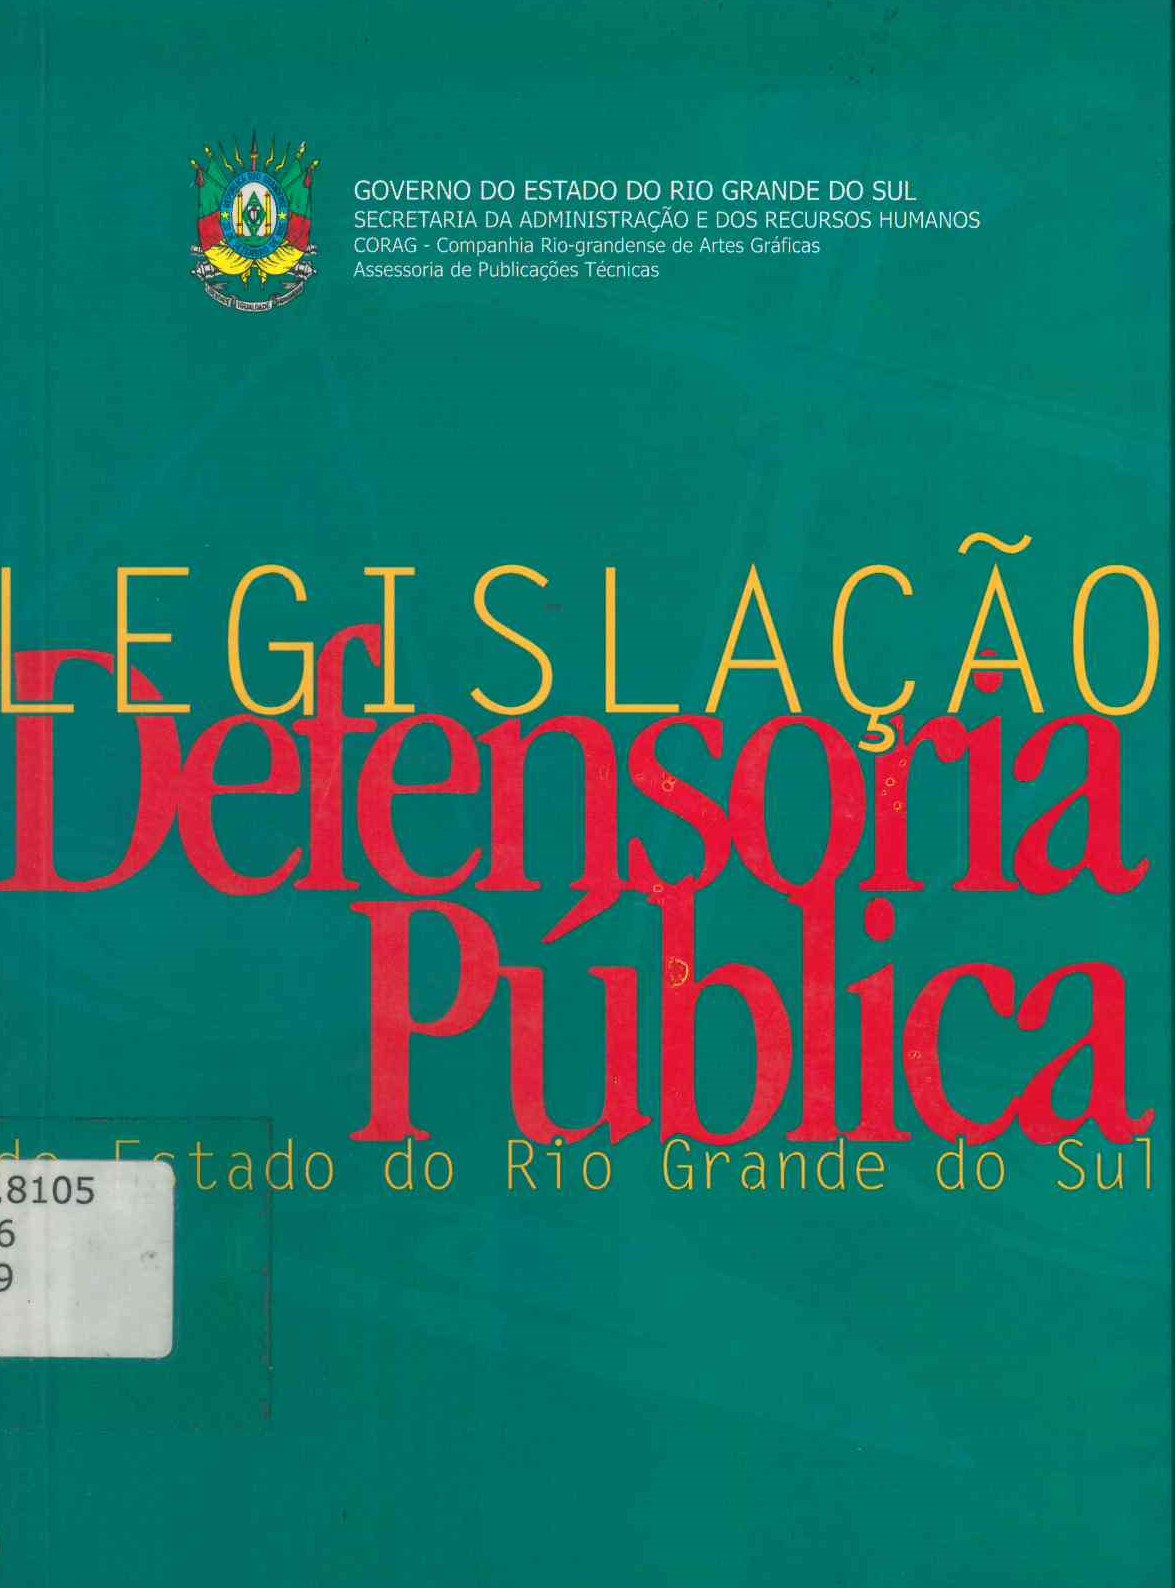 Defensoria Publica do Estado do Rio Grande do Sul